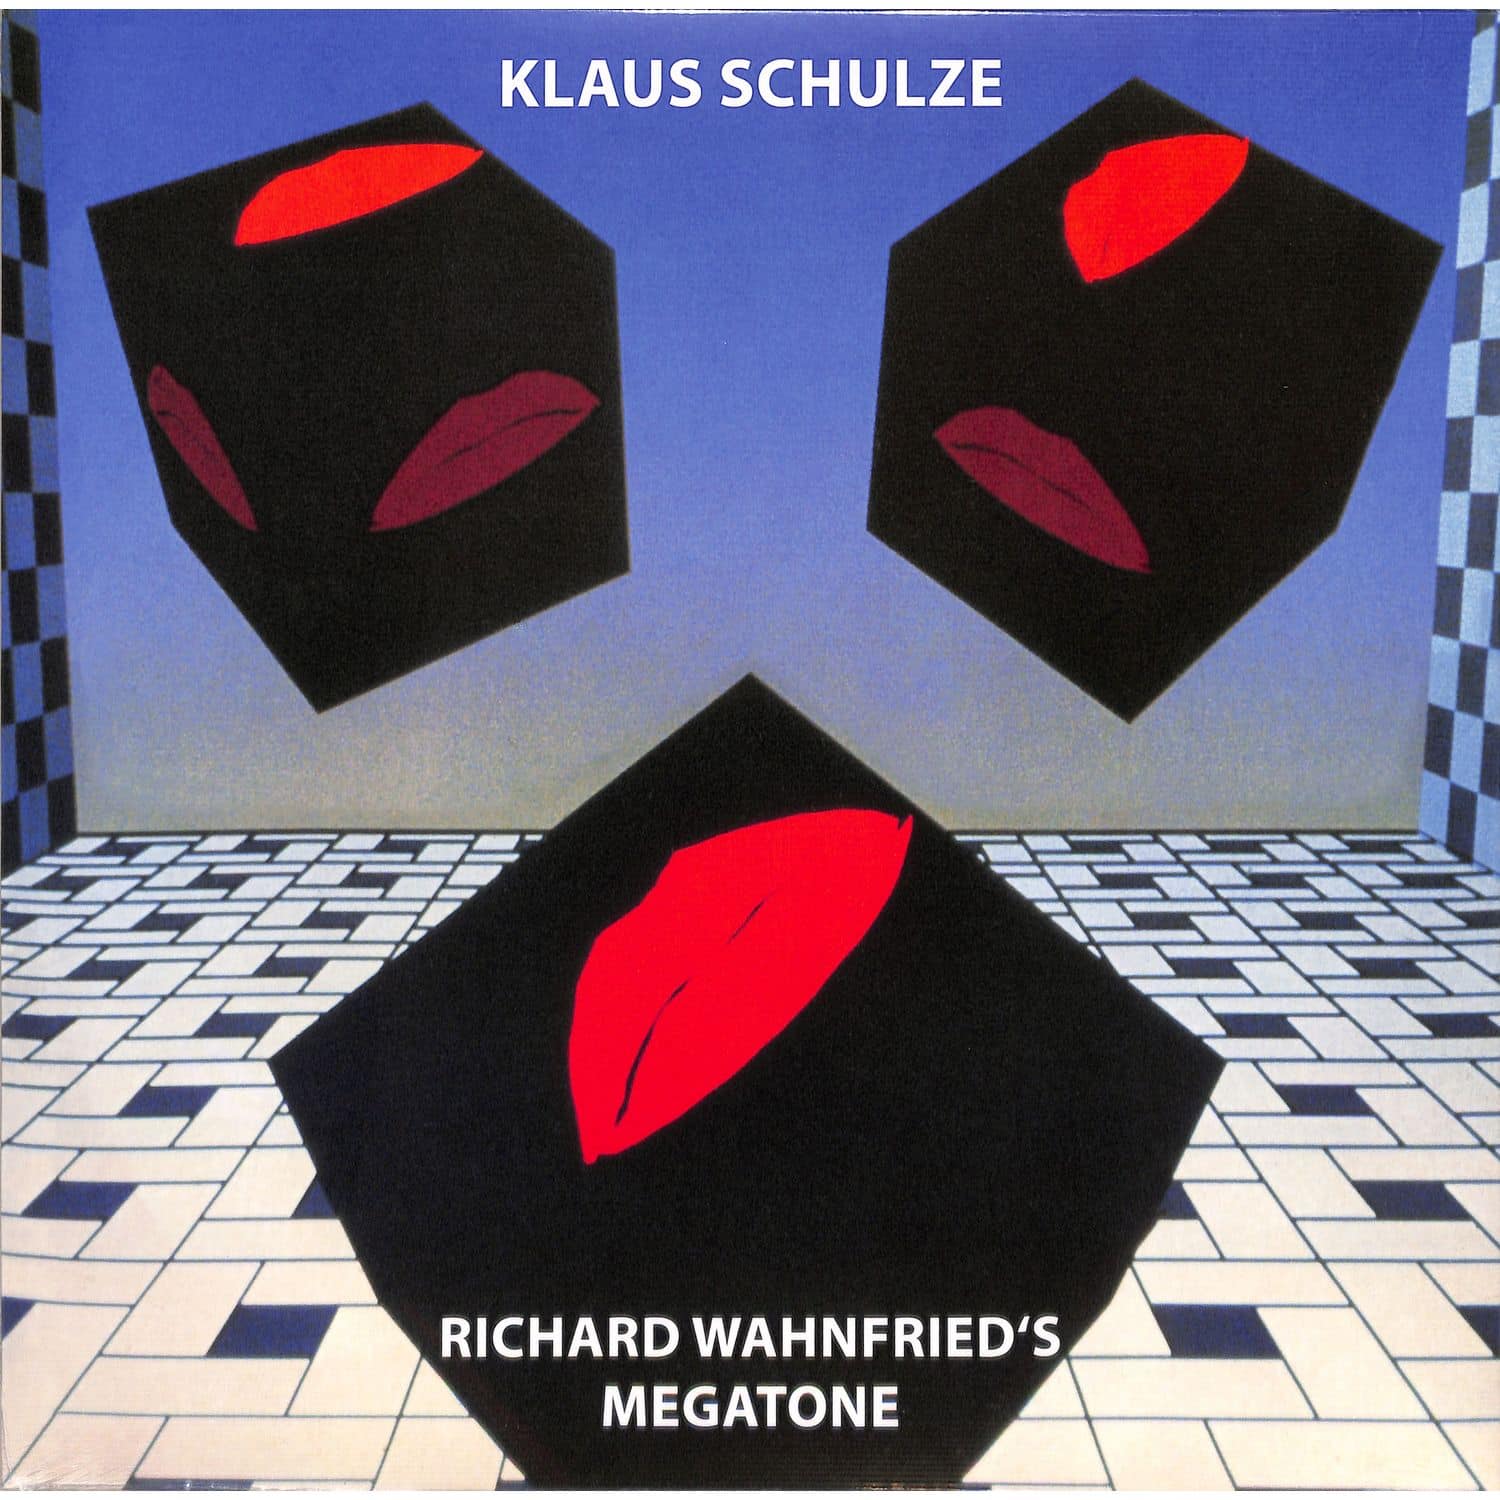 Klaus Schulze - RICHARD WAHNFRIEDS MEGATONE 